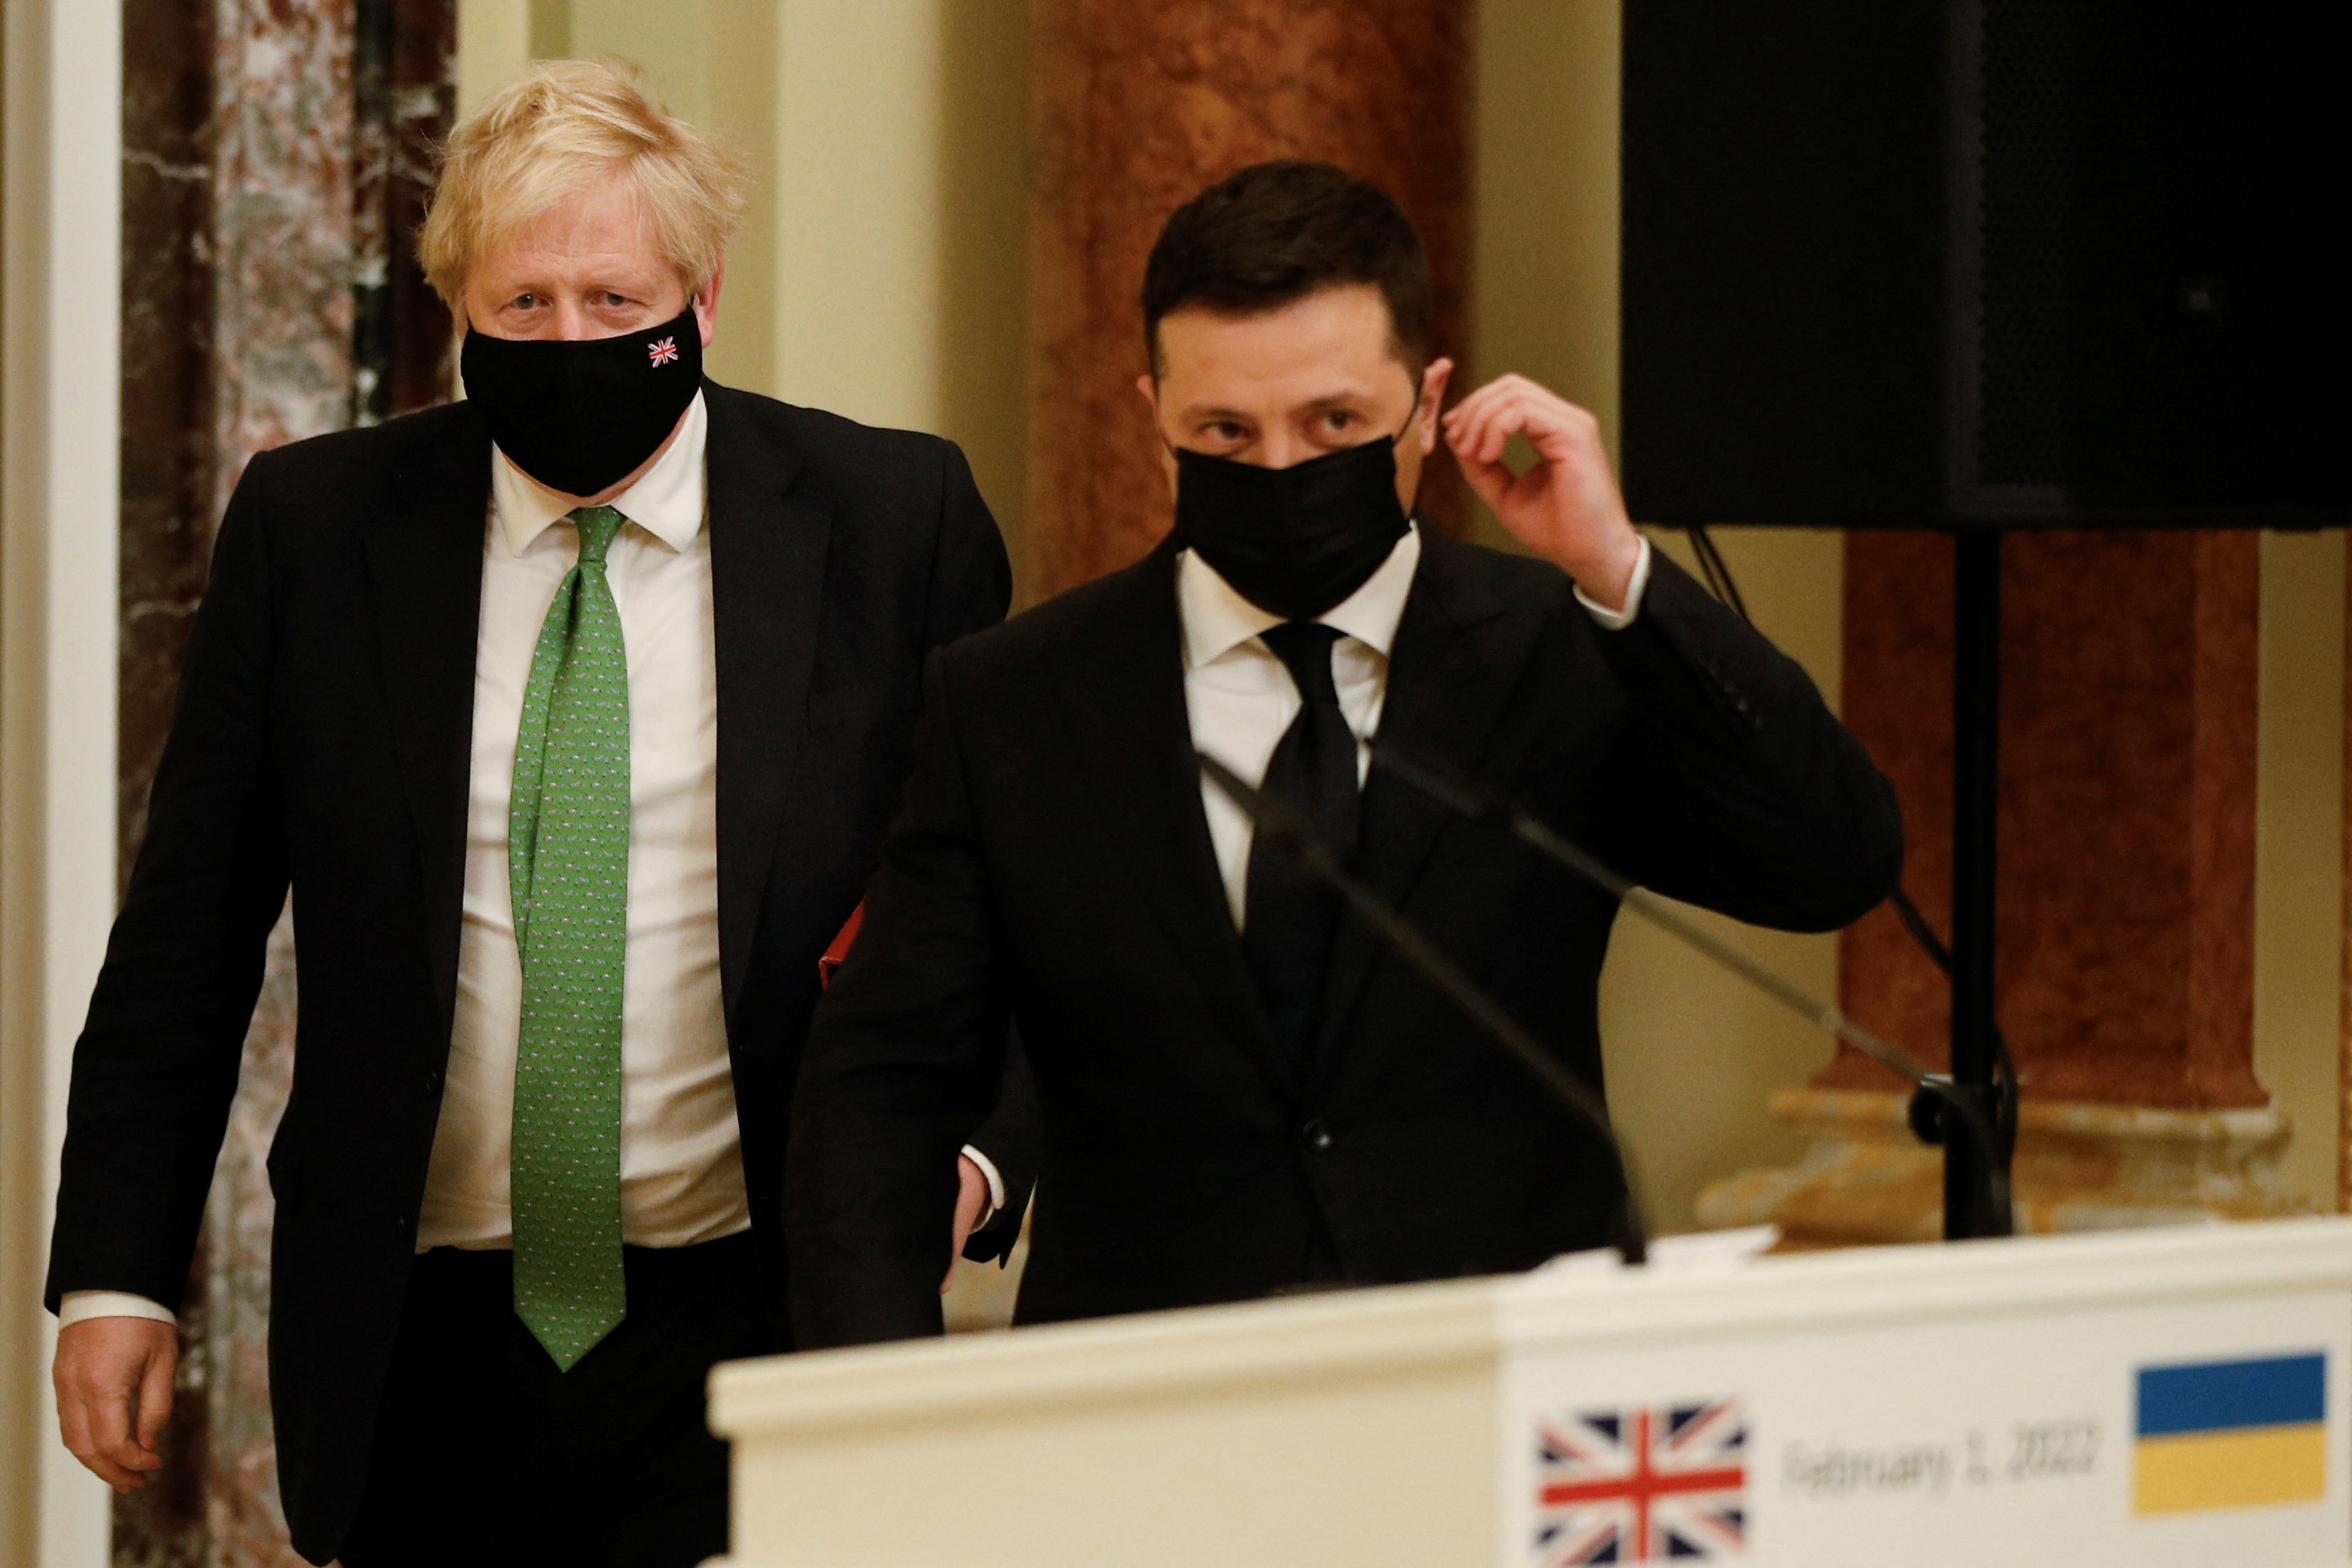 Візит Бориса Джонсона запам'ятався українцям ще й завдяки його зеленій краватці. Фото: REUTERS/Peter Nicholls